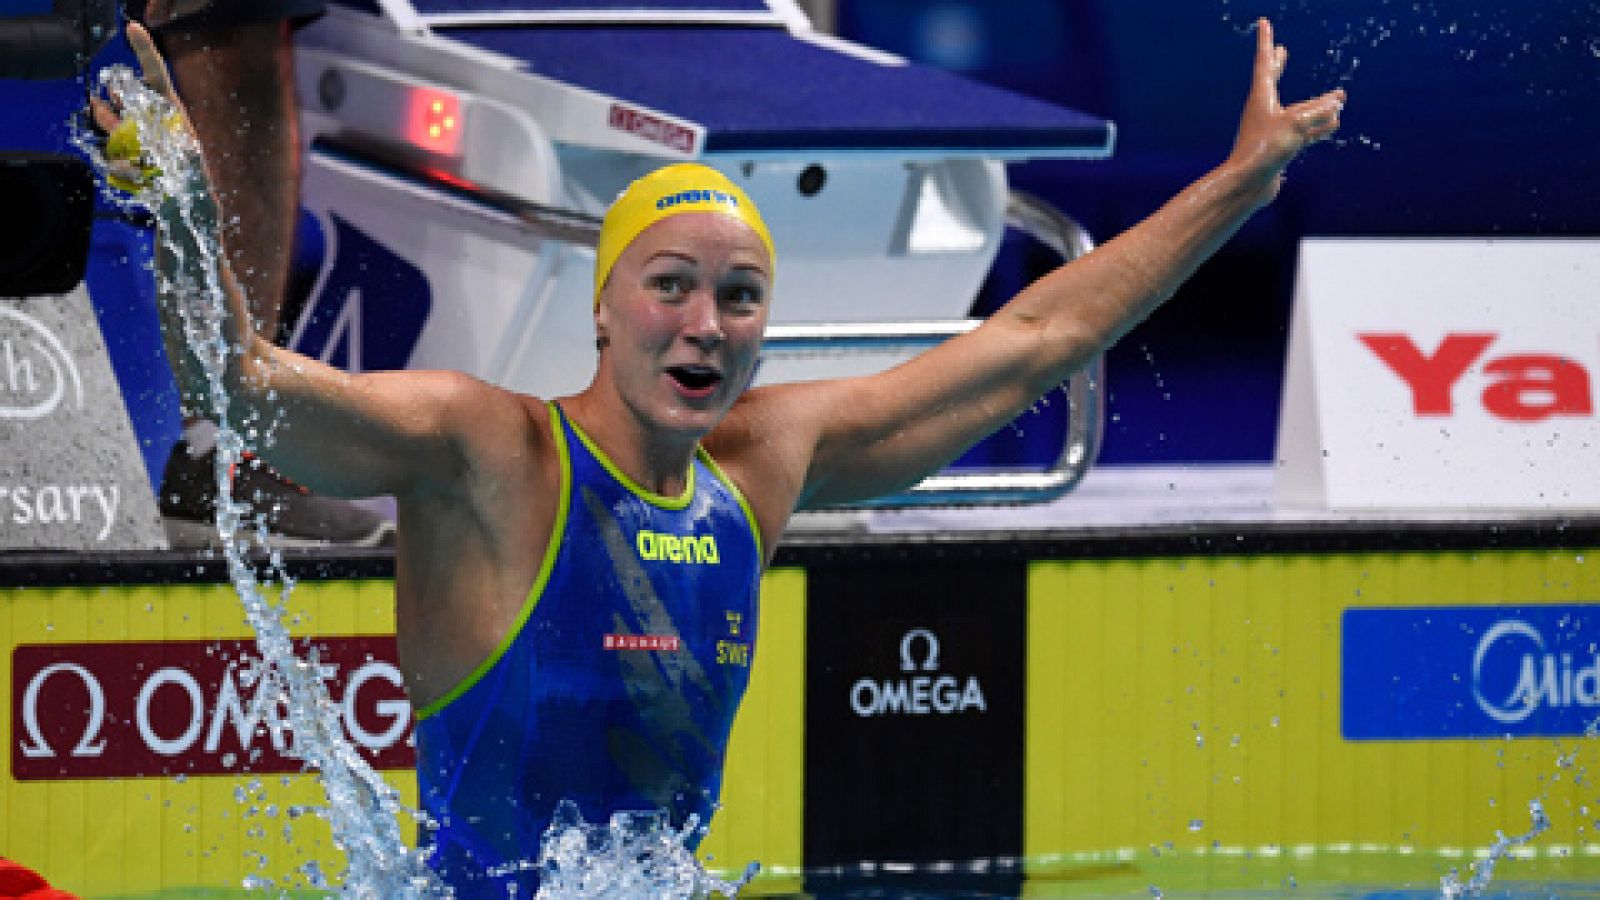 La sueca Sjöstrom bate el récord mundial de los 50 libre (23.67)